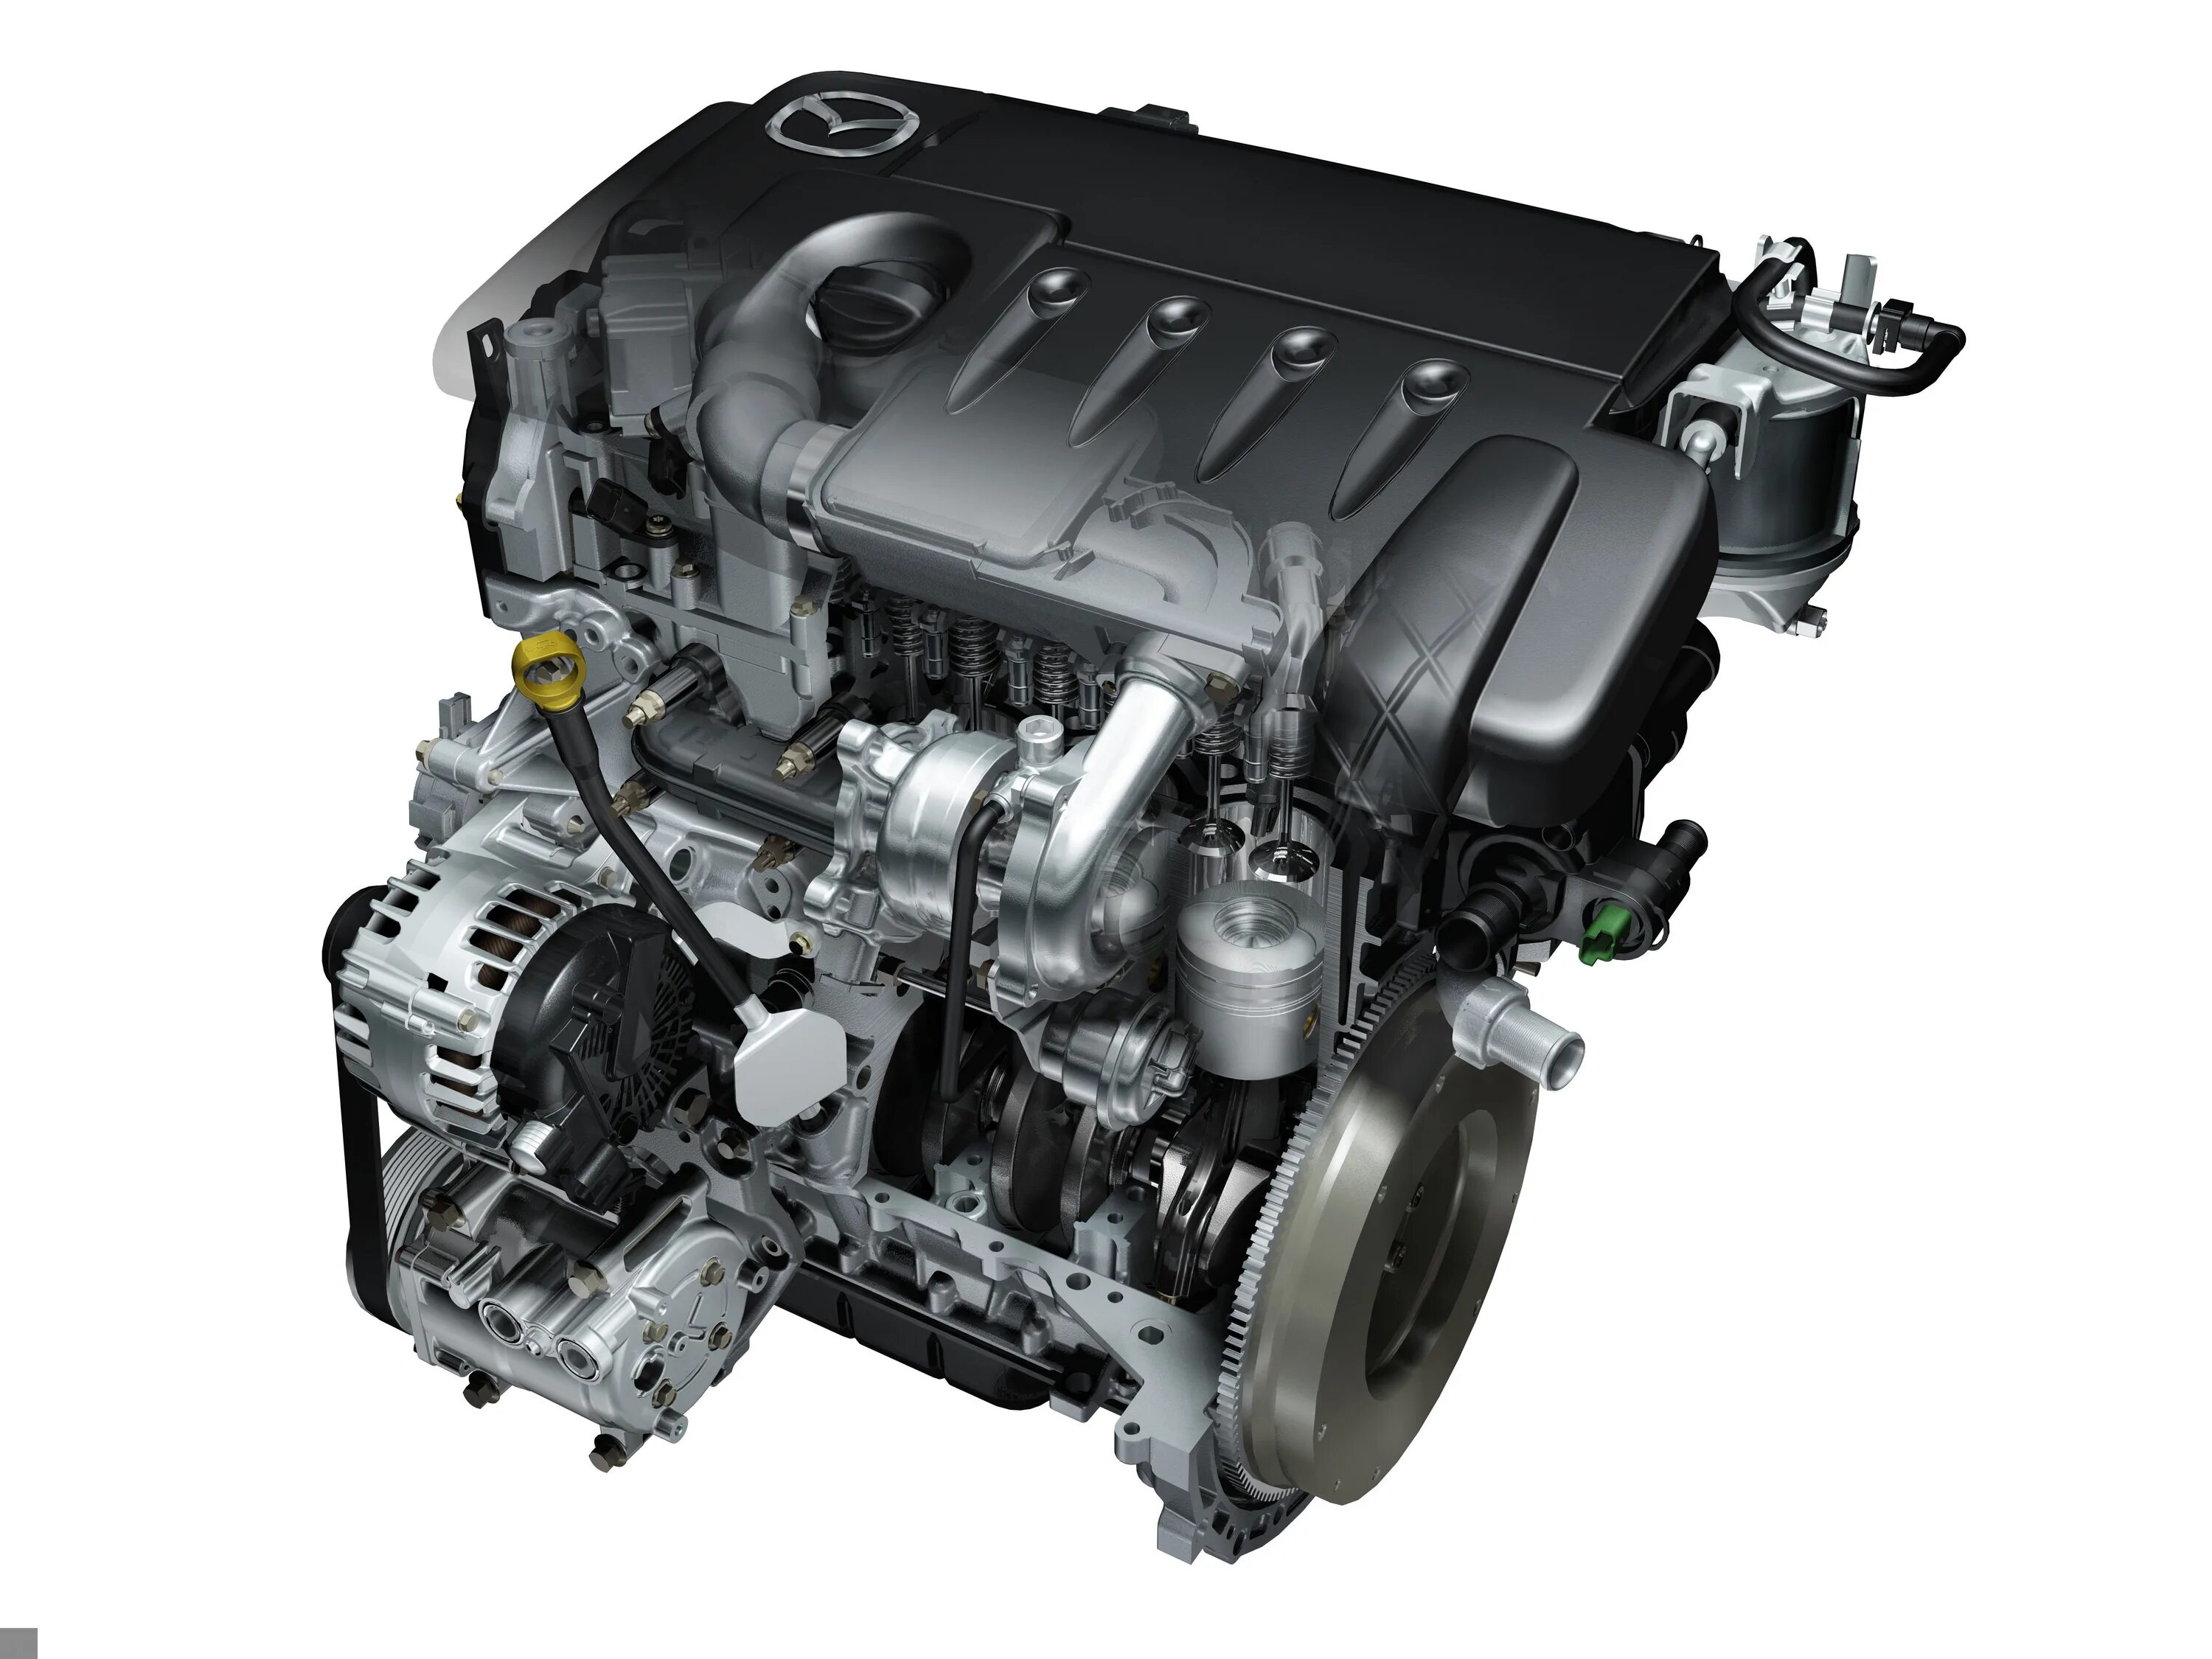 Мотор Мазда 1.6. ДВС Мазда 3l. Мотор Мазда 3 1.6. Mazda 6 2.3 двигатель. Двигатель двигатель 1 3 литра